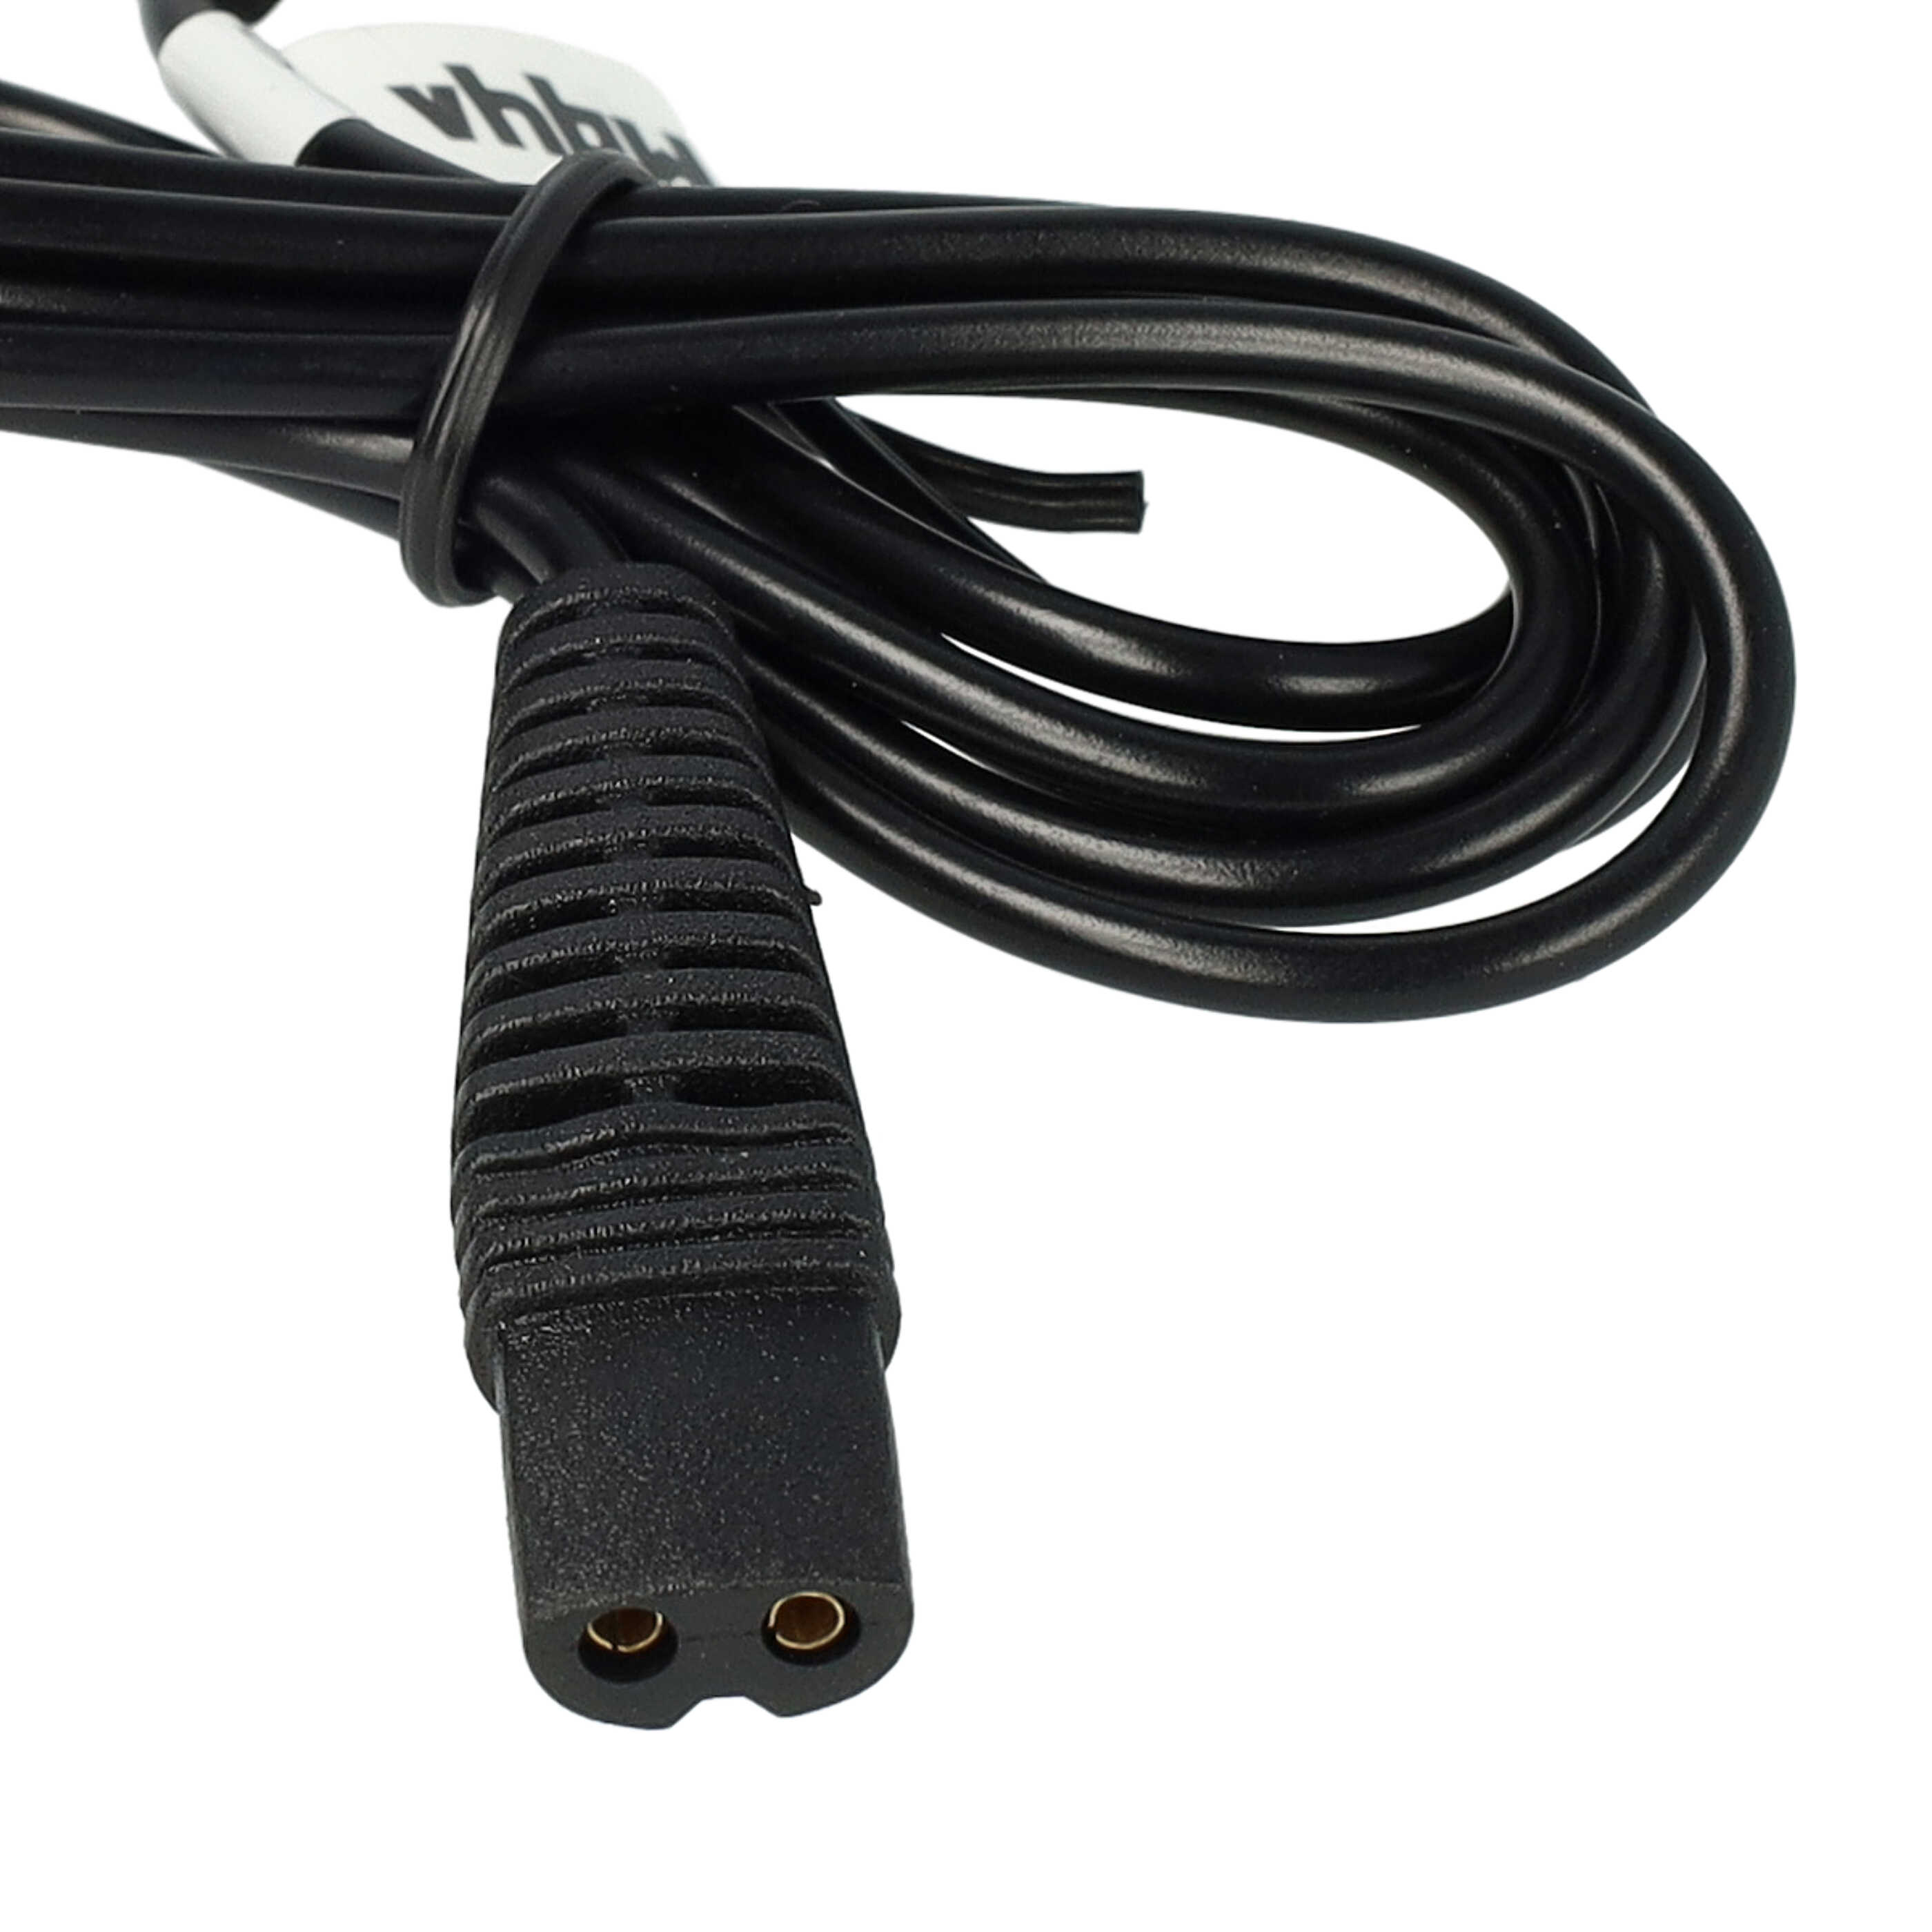 Câble de charge USB pour rasoir, brosse à dents électrique Braun, Oral-B HC20 (5611) – 120 cm